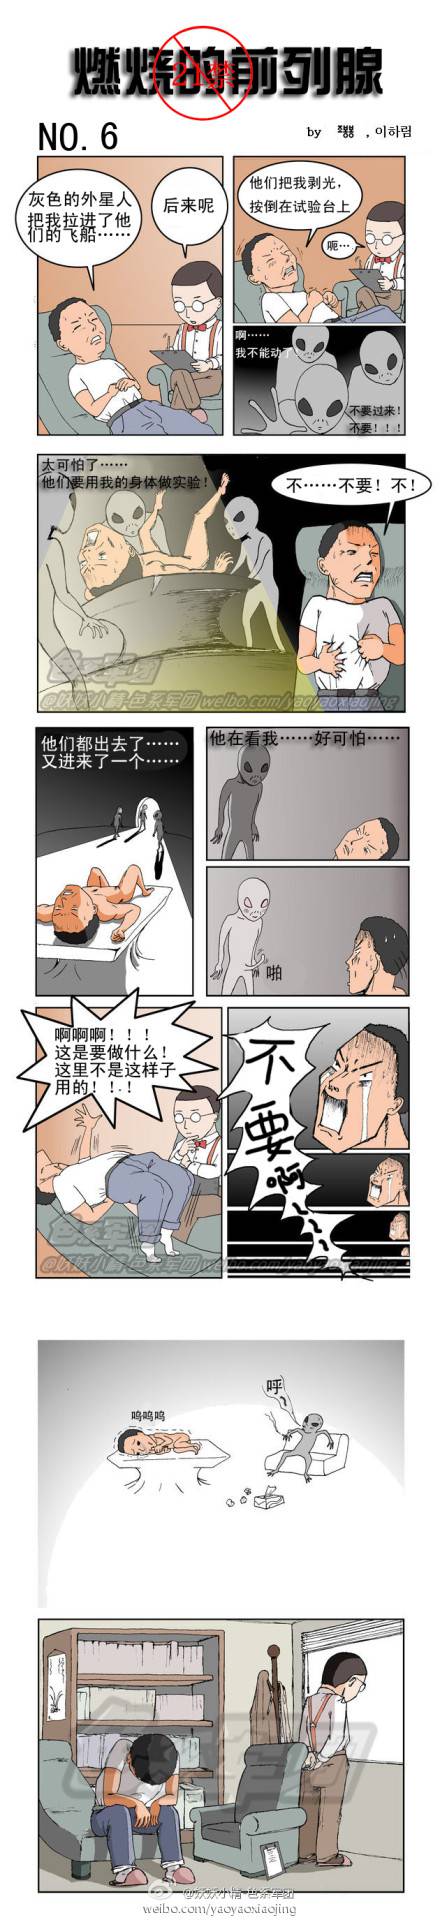 邪恶漫画爆笑囧图第69刊：应该